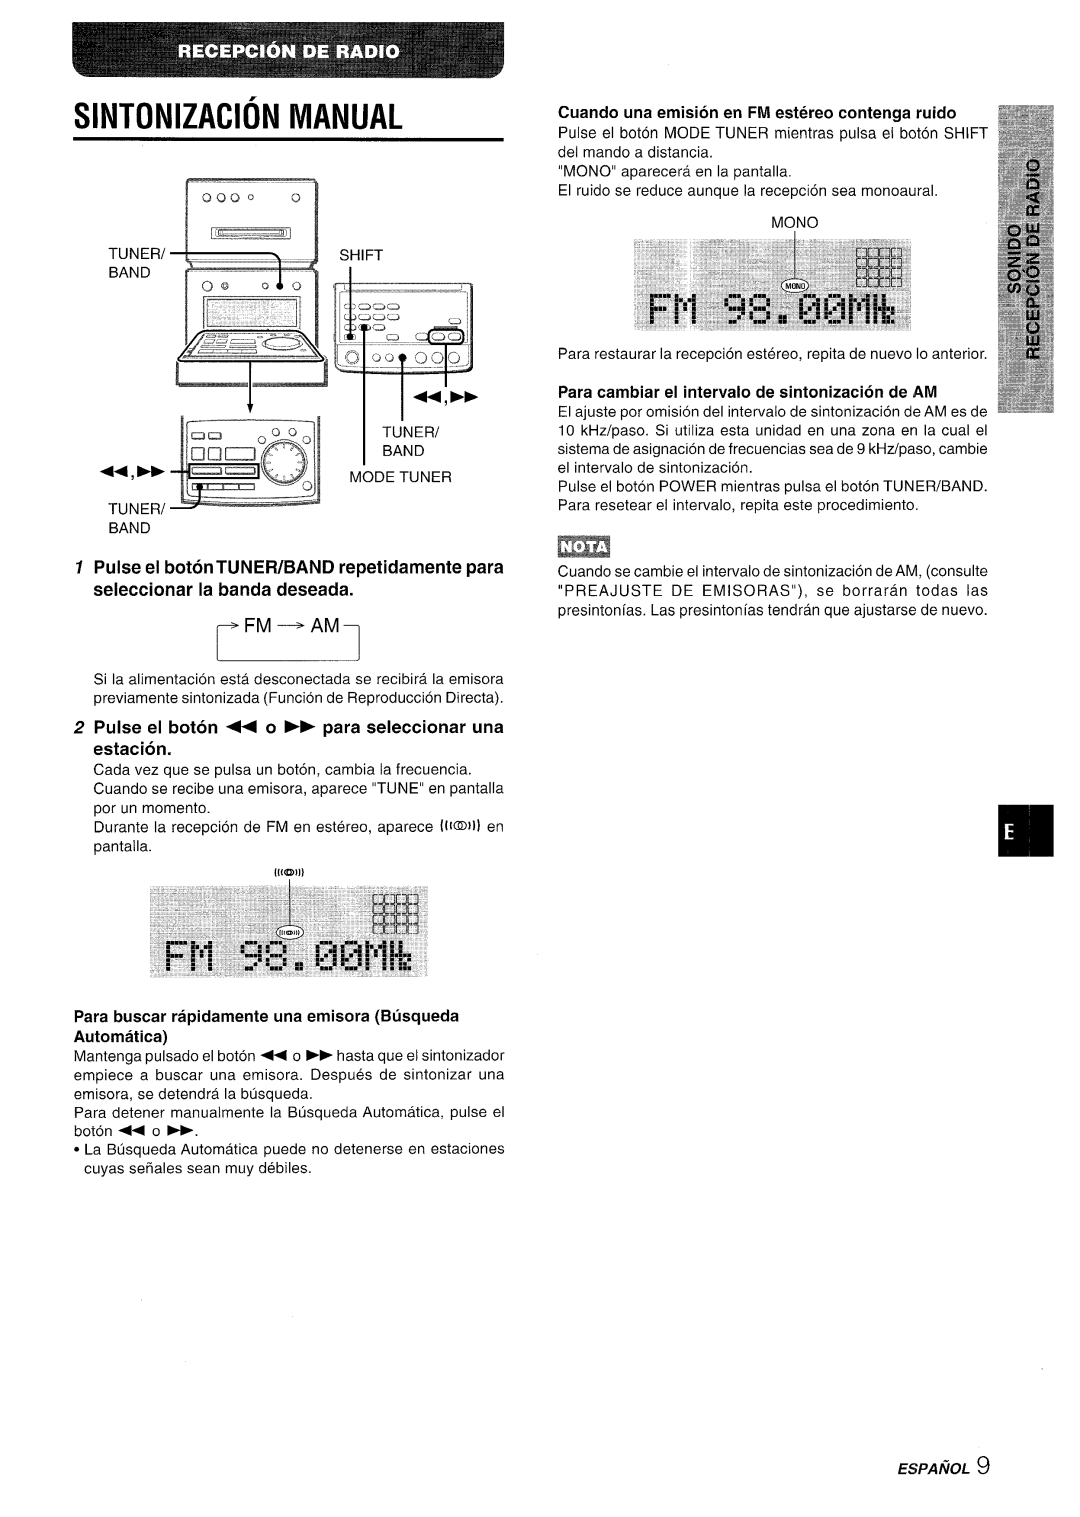 Aiwa XR-MD95 manual TUNER= s, Sintonizacion Manual, Pulse el boton 4+ o - para seleccionar una estacion, Espanol 